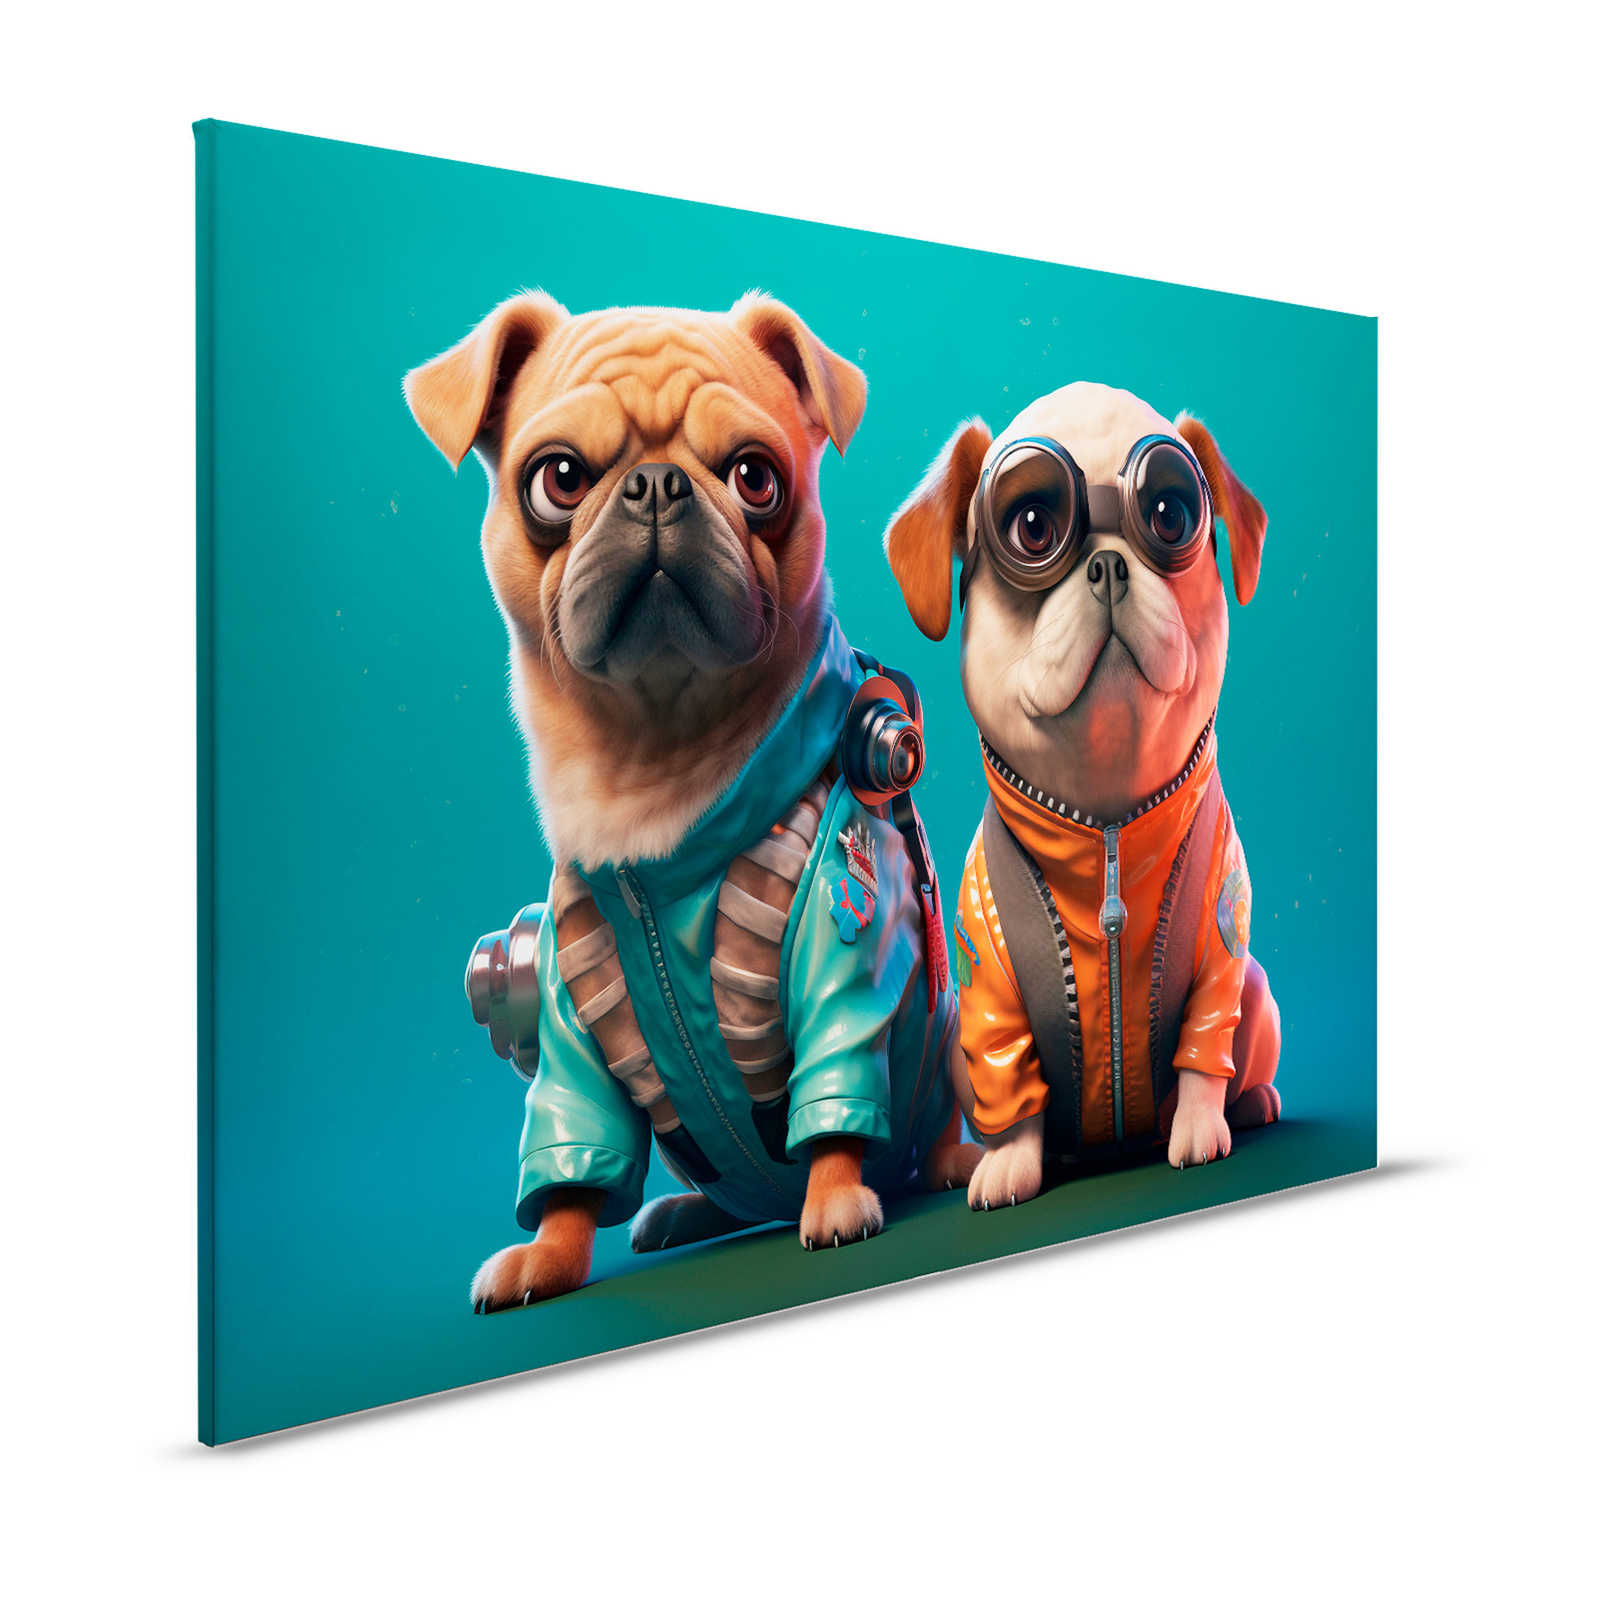 Toile KI »Cute Dogs« - 120 cm x 80 cm
